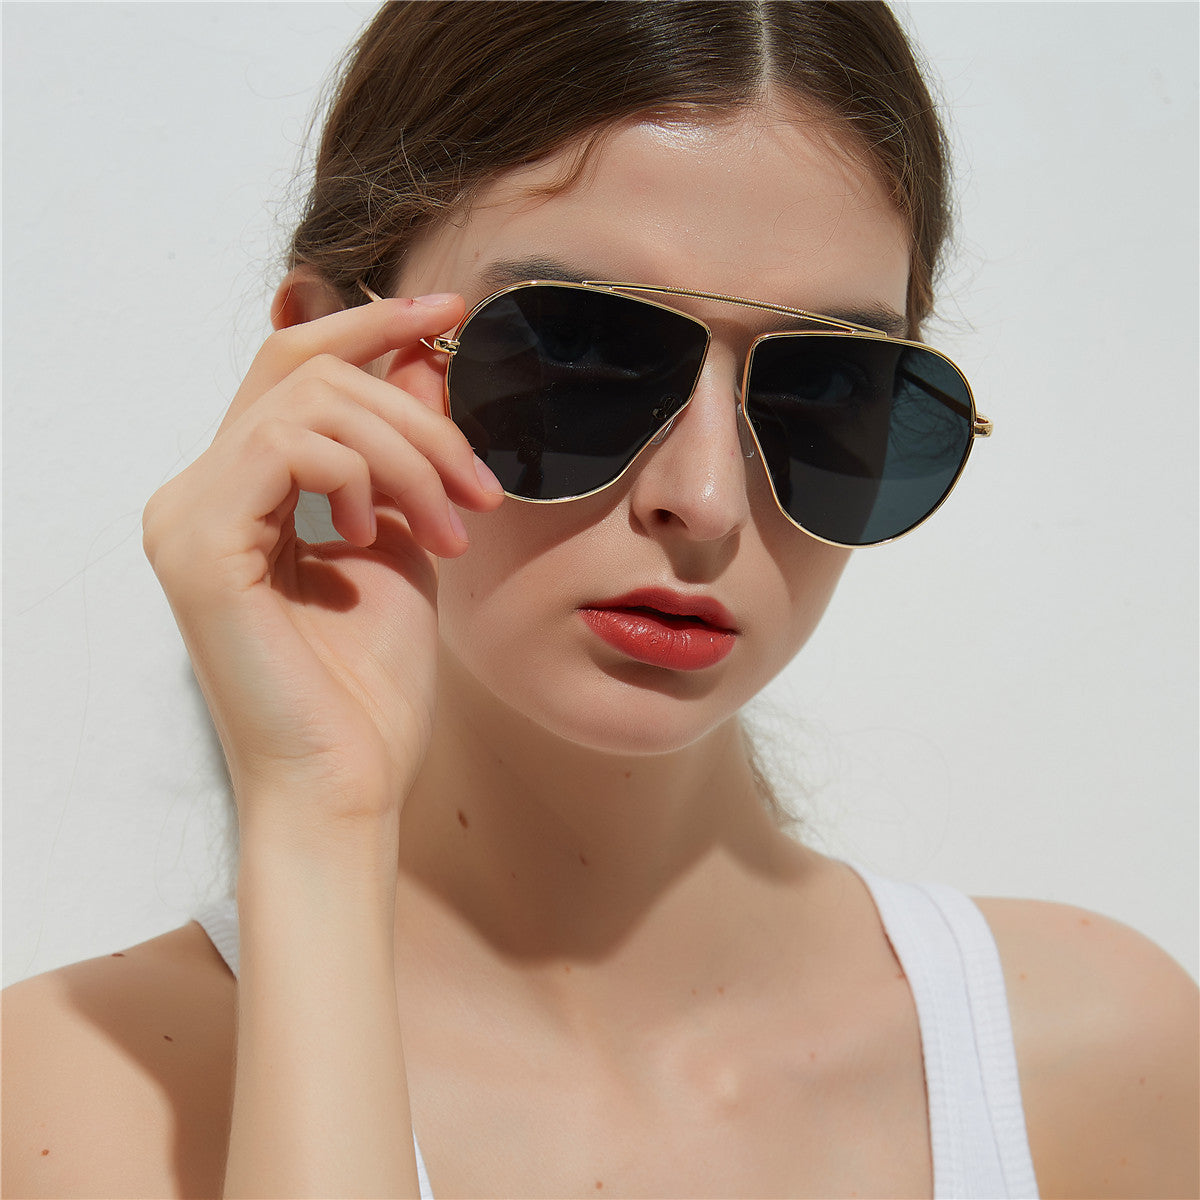 A1166 نظارة شمسية بإطار كبير متعدد الأضلاع، نظارة شمسية بإطار معدني للنساء